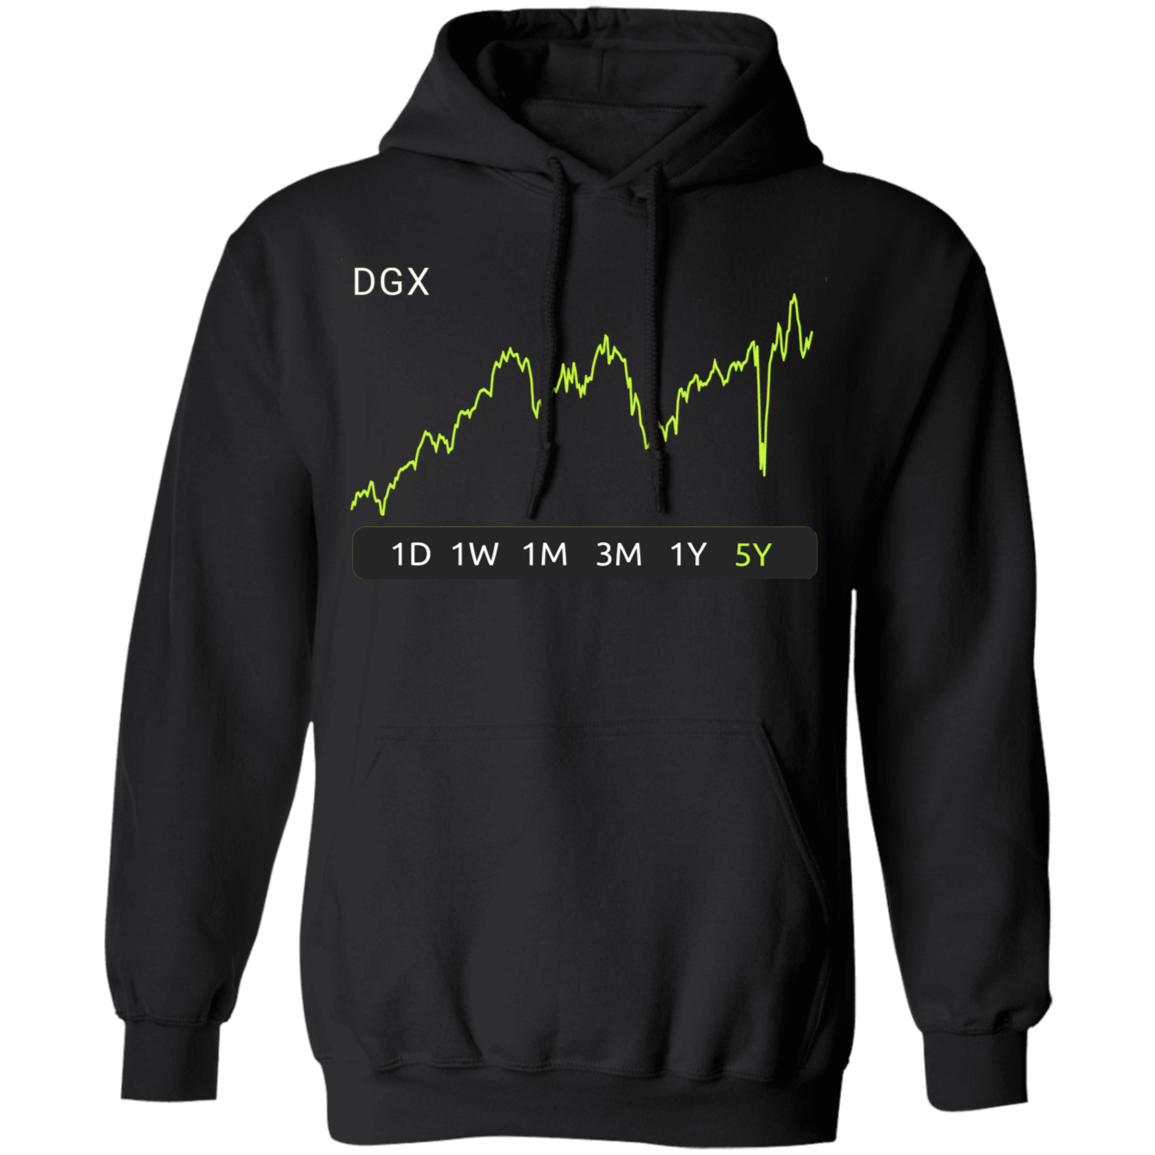 DGX Stock 5y Pullover Hoodie